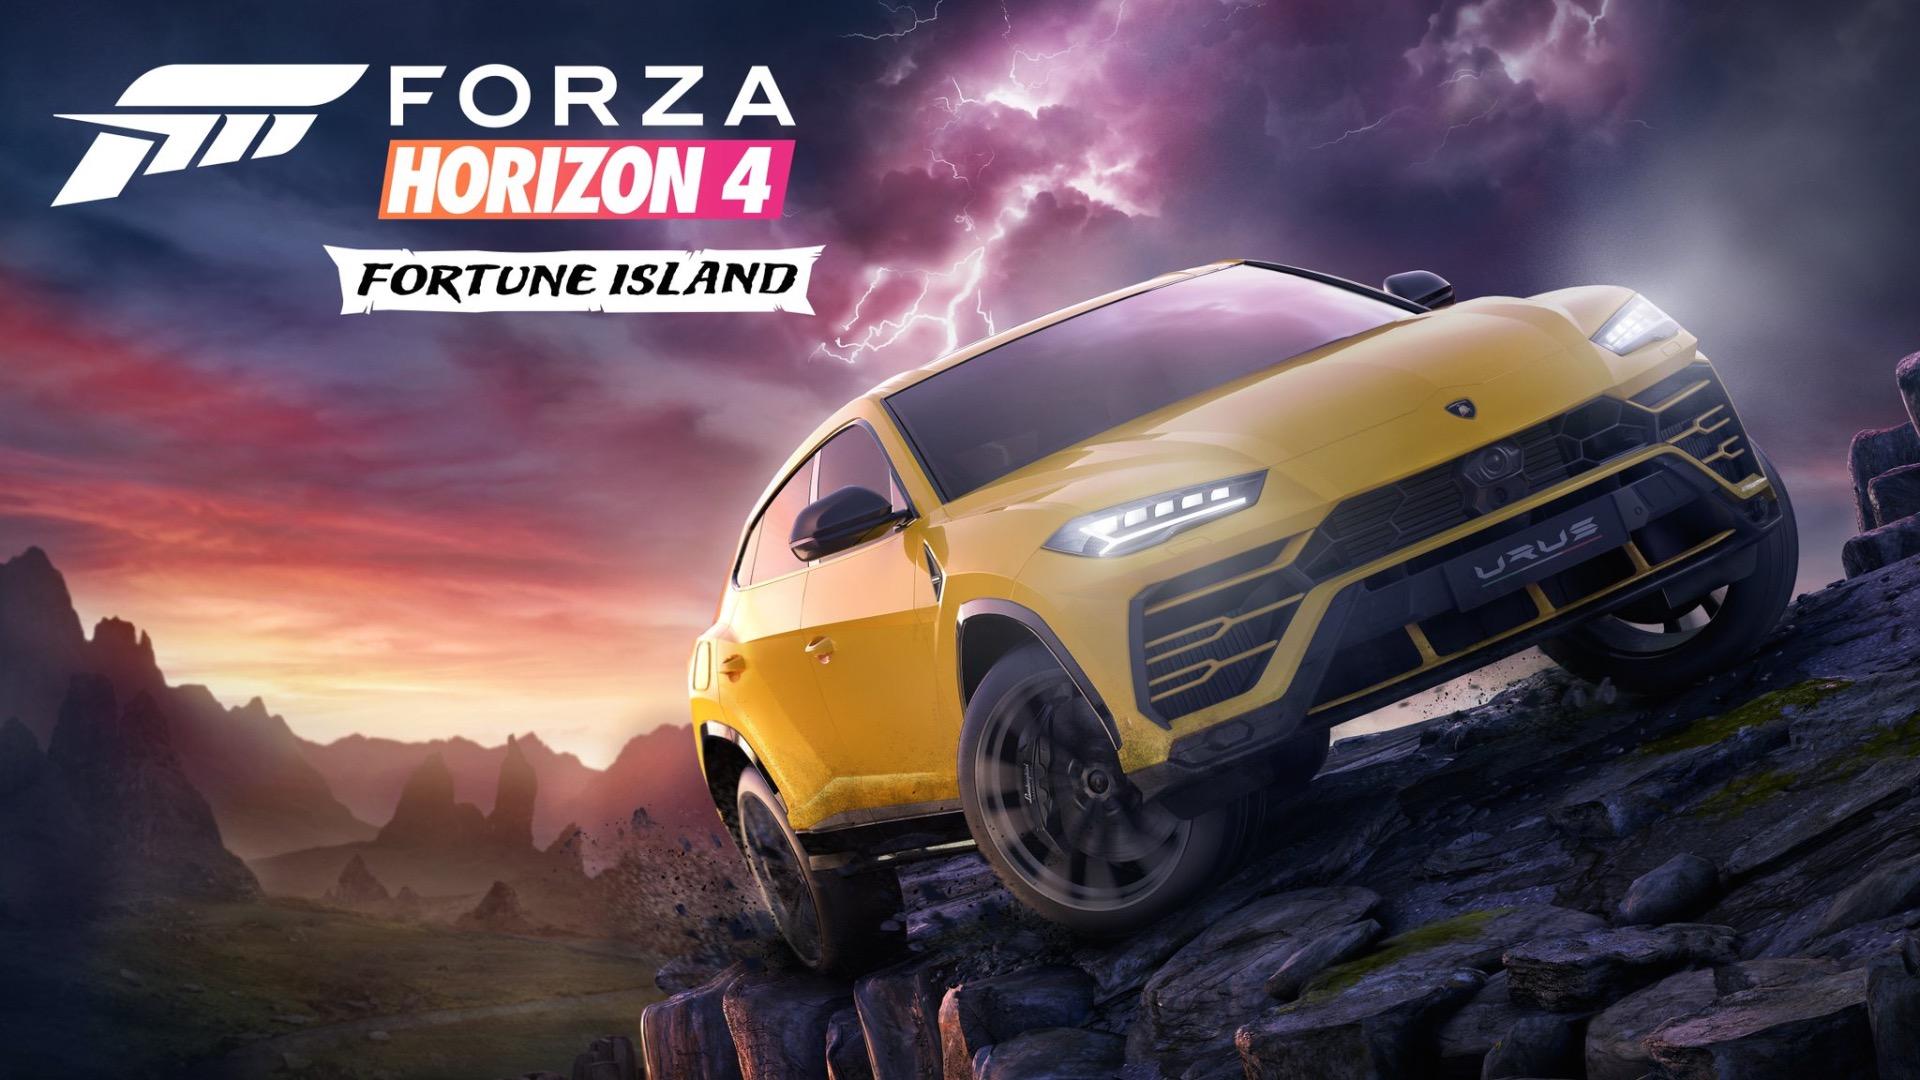 ซิ่งกันต่อ! Fortune Island เนื้อหาเสริมตัวแรกของ Forza Horizon 4 เตรียมเปิดให้เล่น 13 ธ.ค.นี้